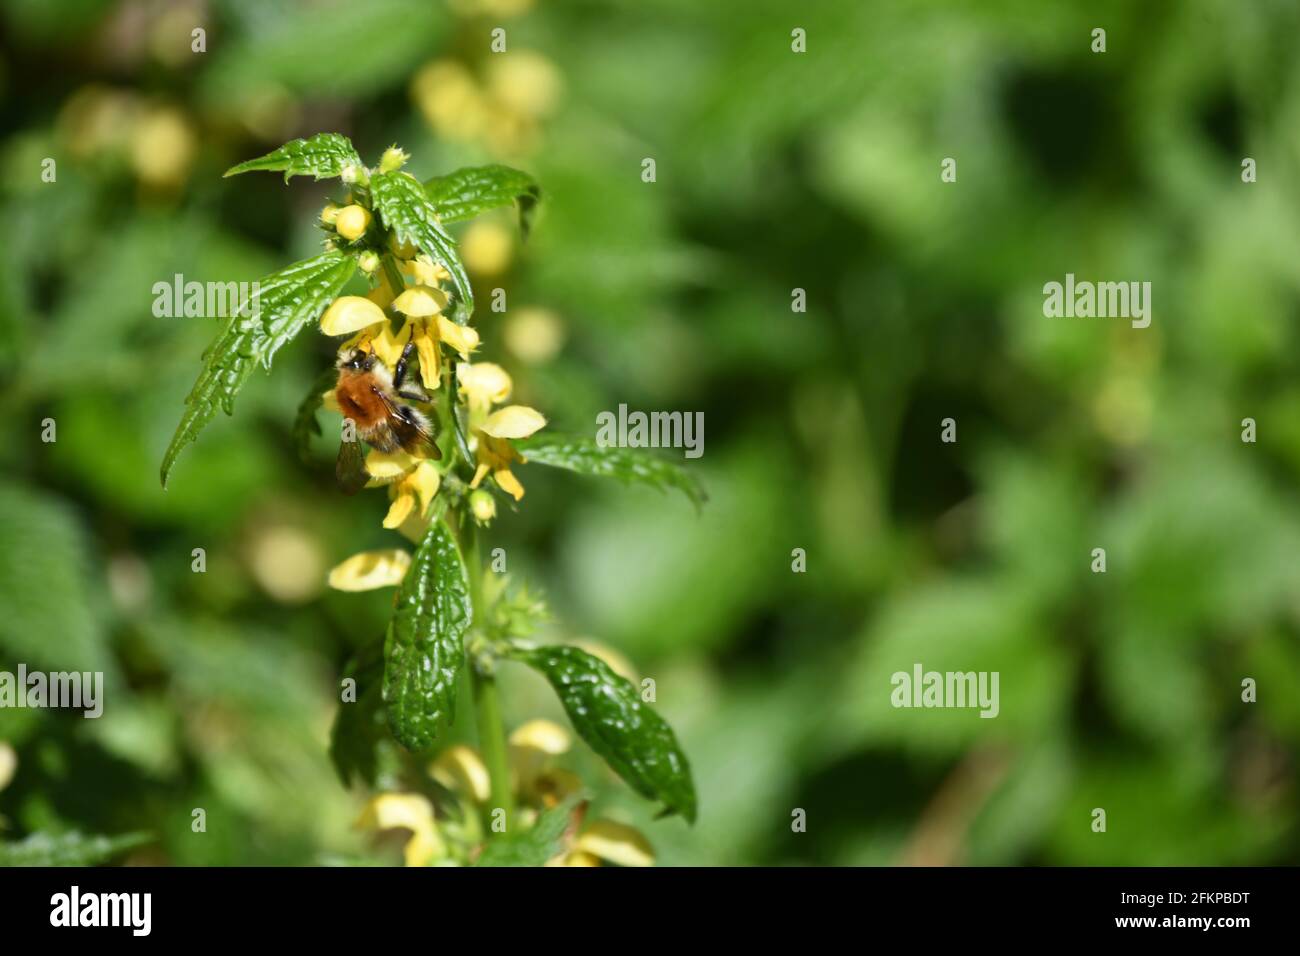 En Eurasien weit verbreitete Heilpflanze und Bienenweide Latium galeobdolon - gelbe oder Goldtaubnesselals Futterspender für Hummeln Foto de stock